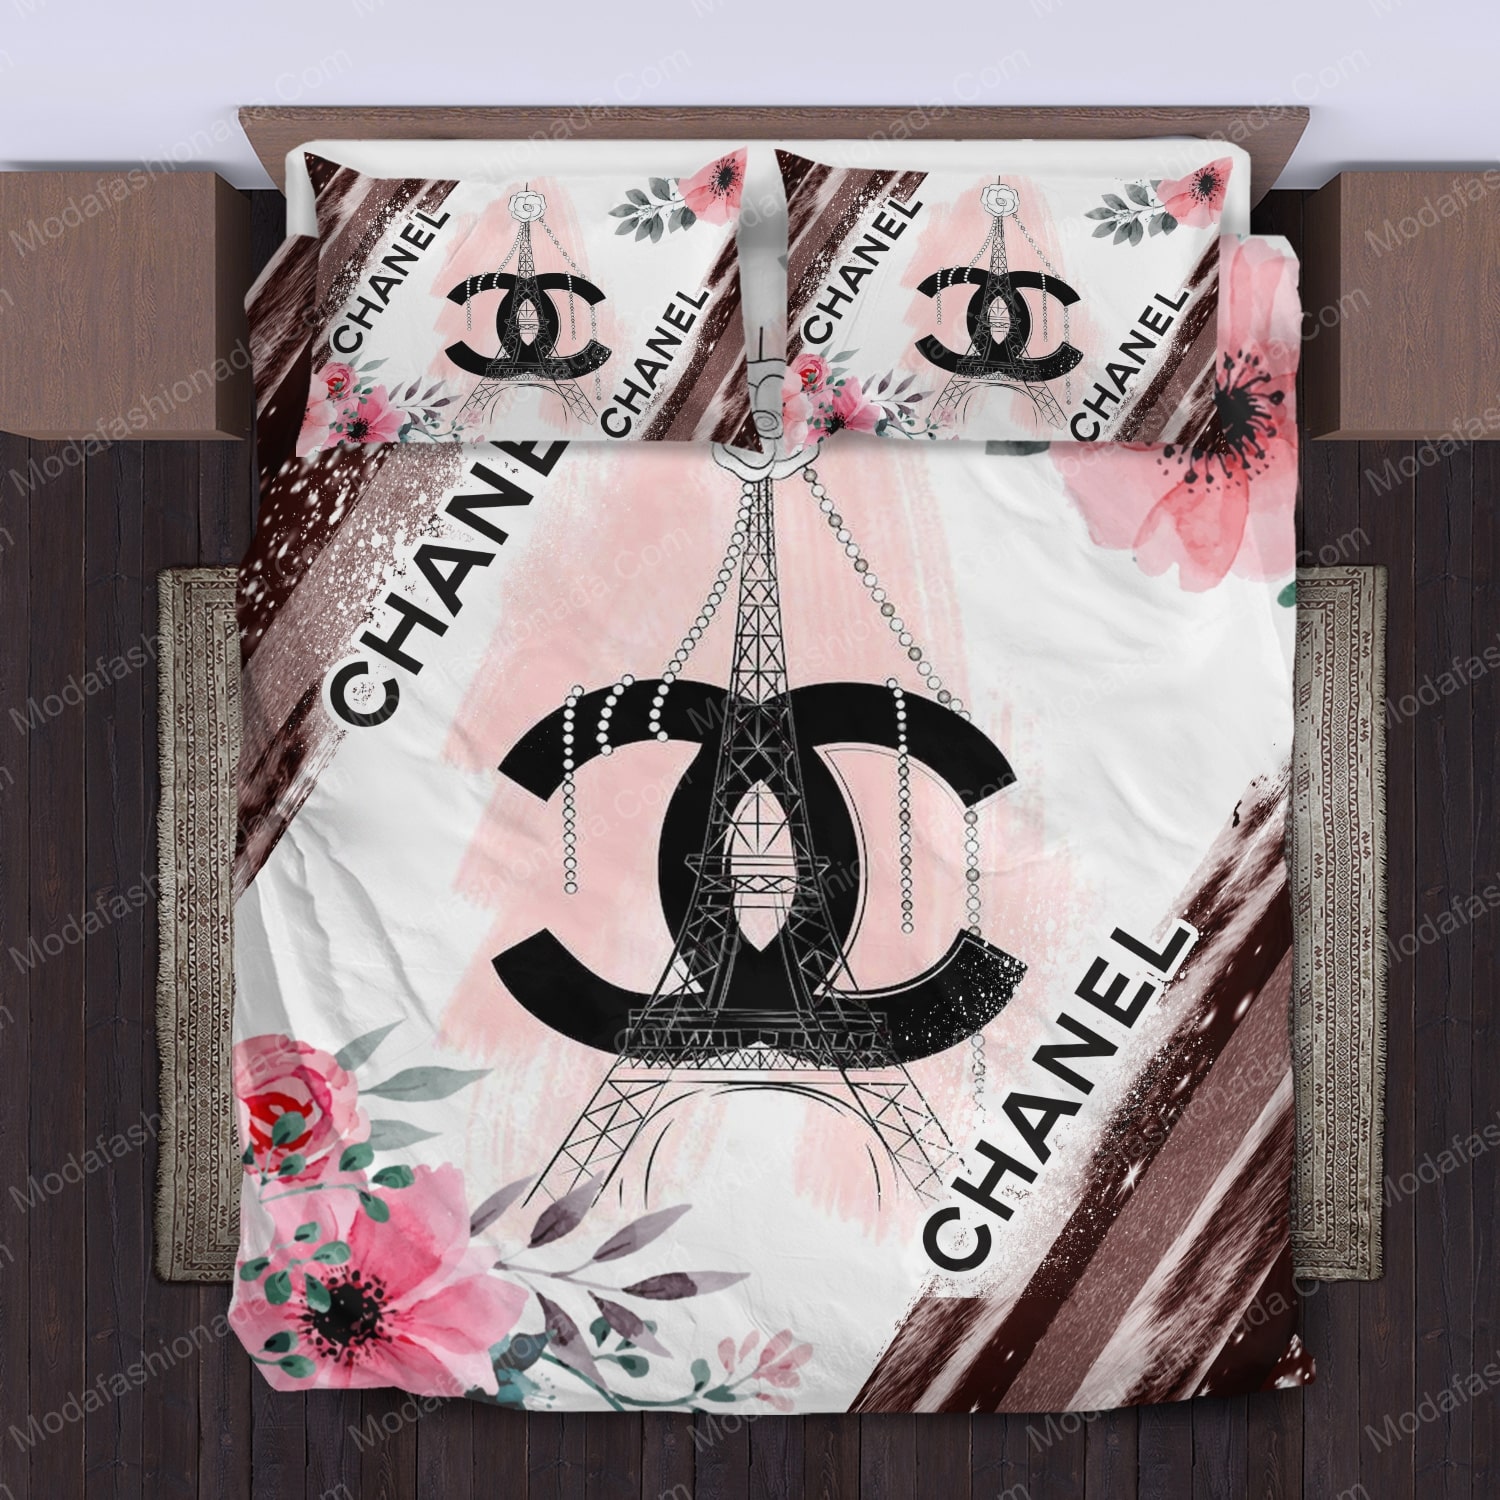 10+ Idea Chanel Bed Sets, Bedding Sets, Bedroom Sets, Bed Sheets